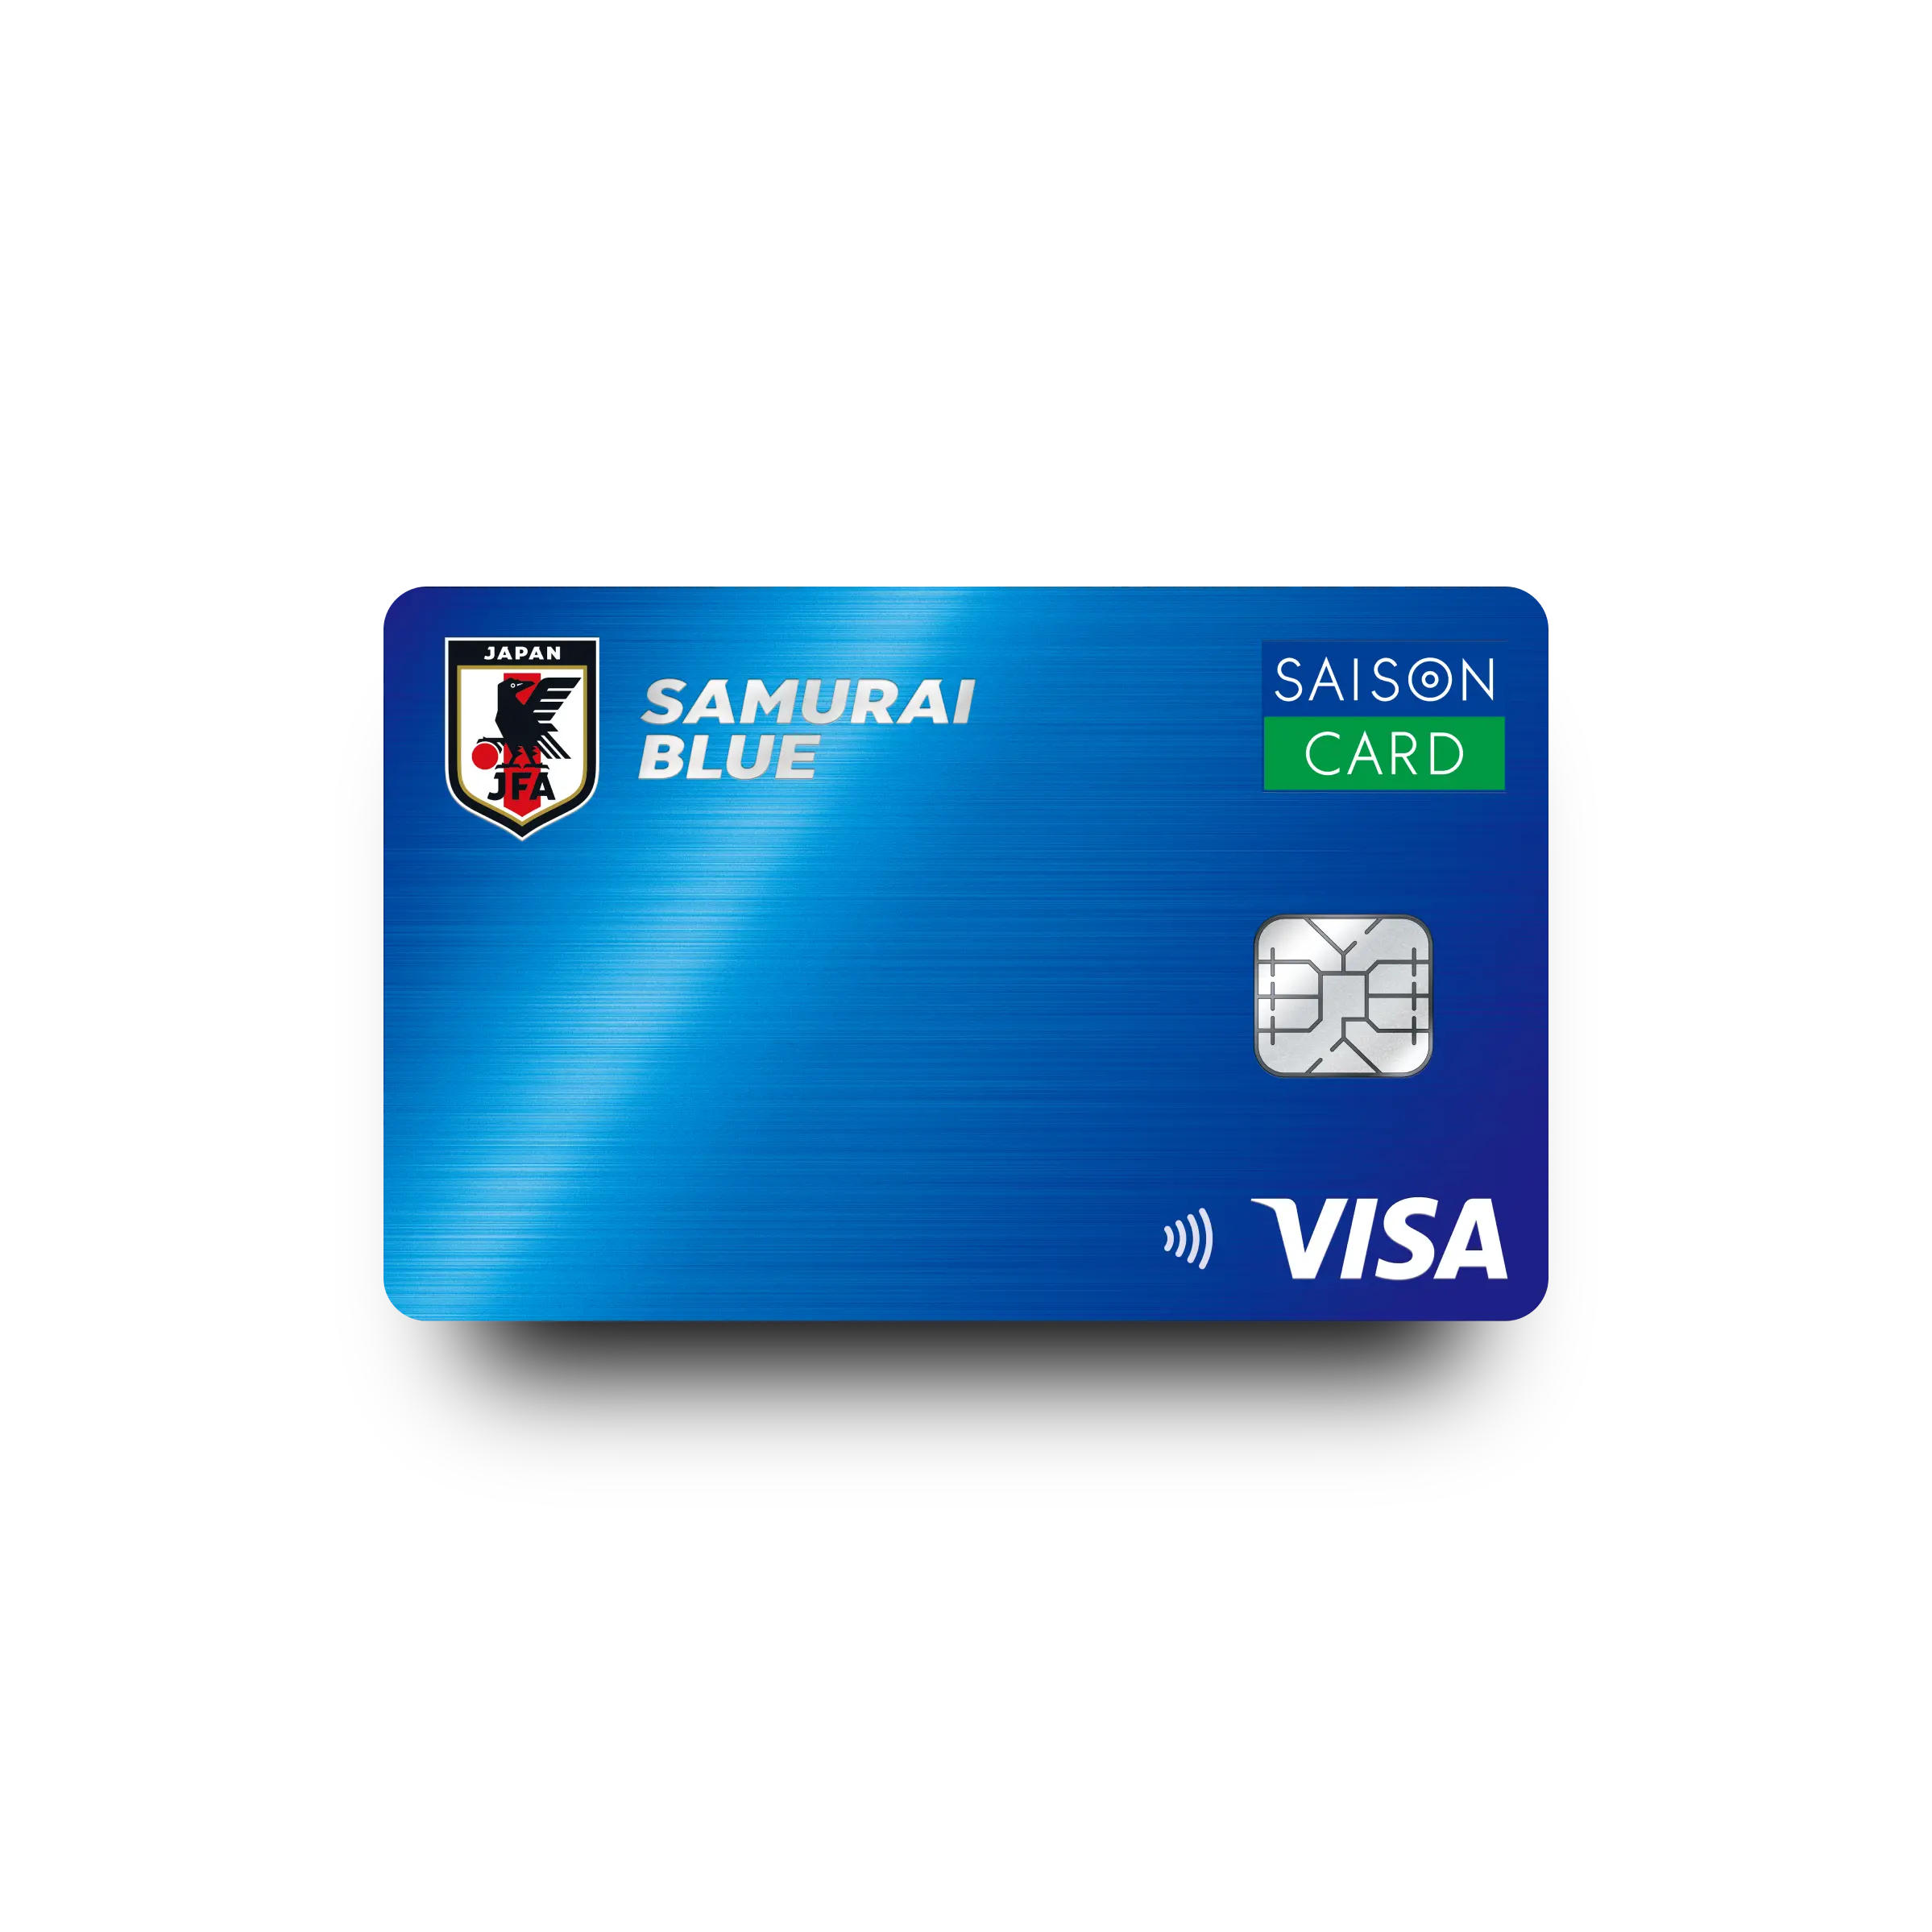 SAMURAI BLUE カード